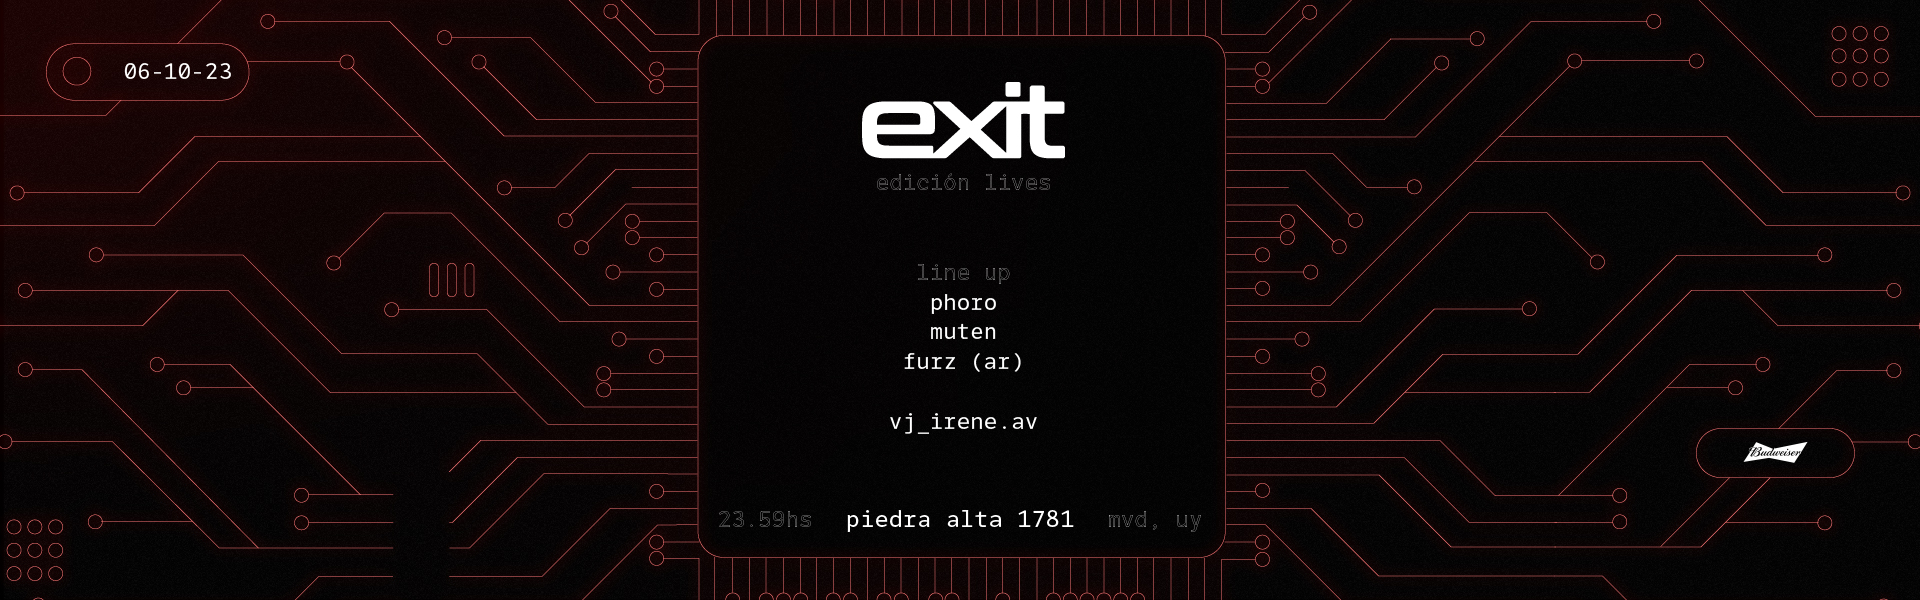 Flyer EXIT - EDICIÓN LIVES